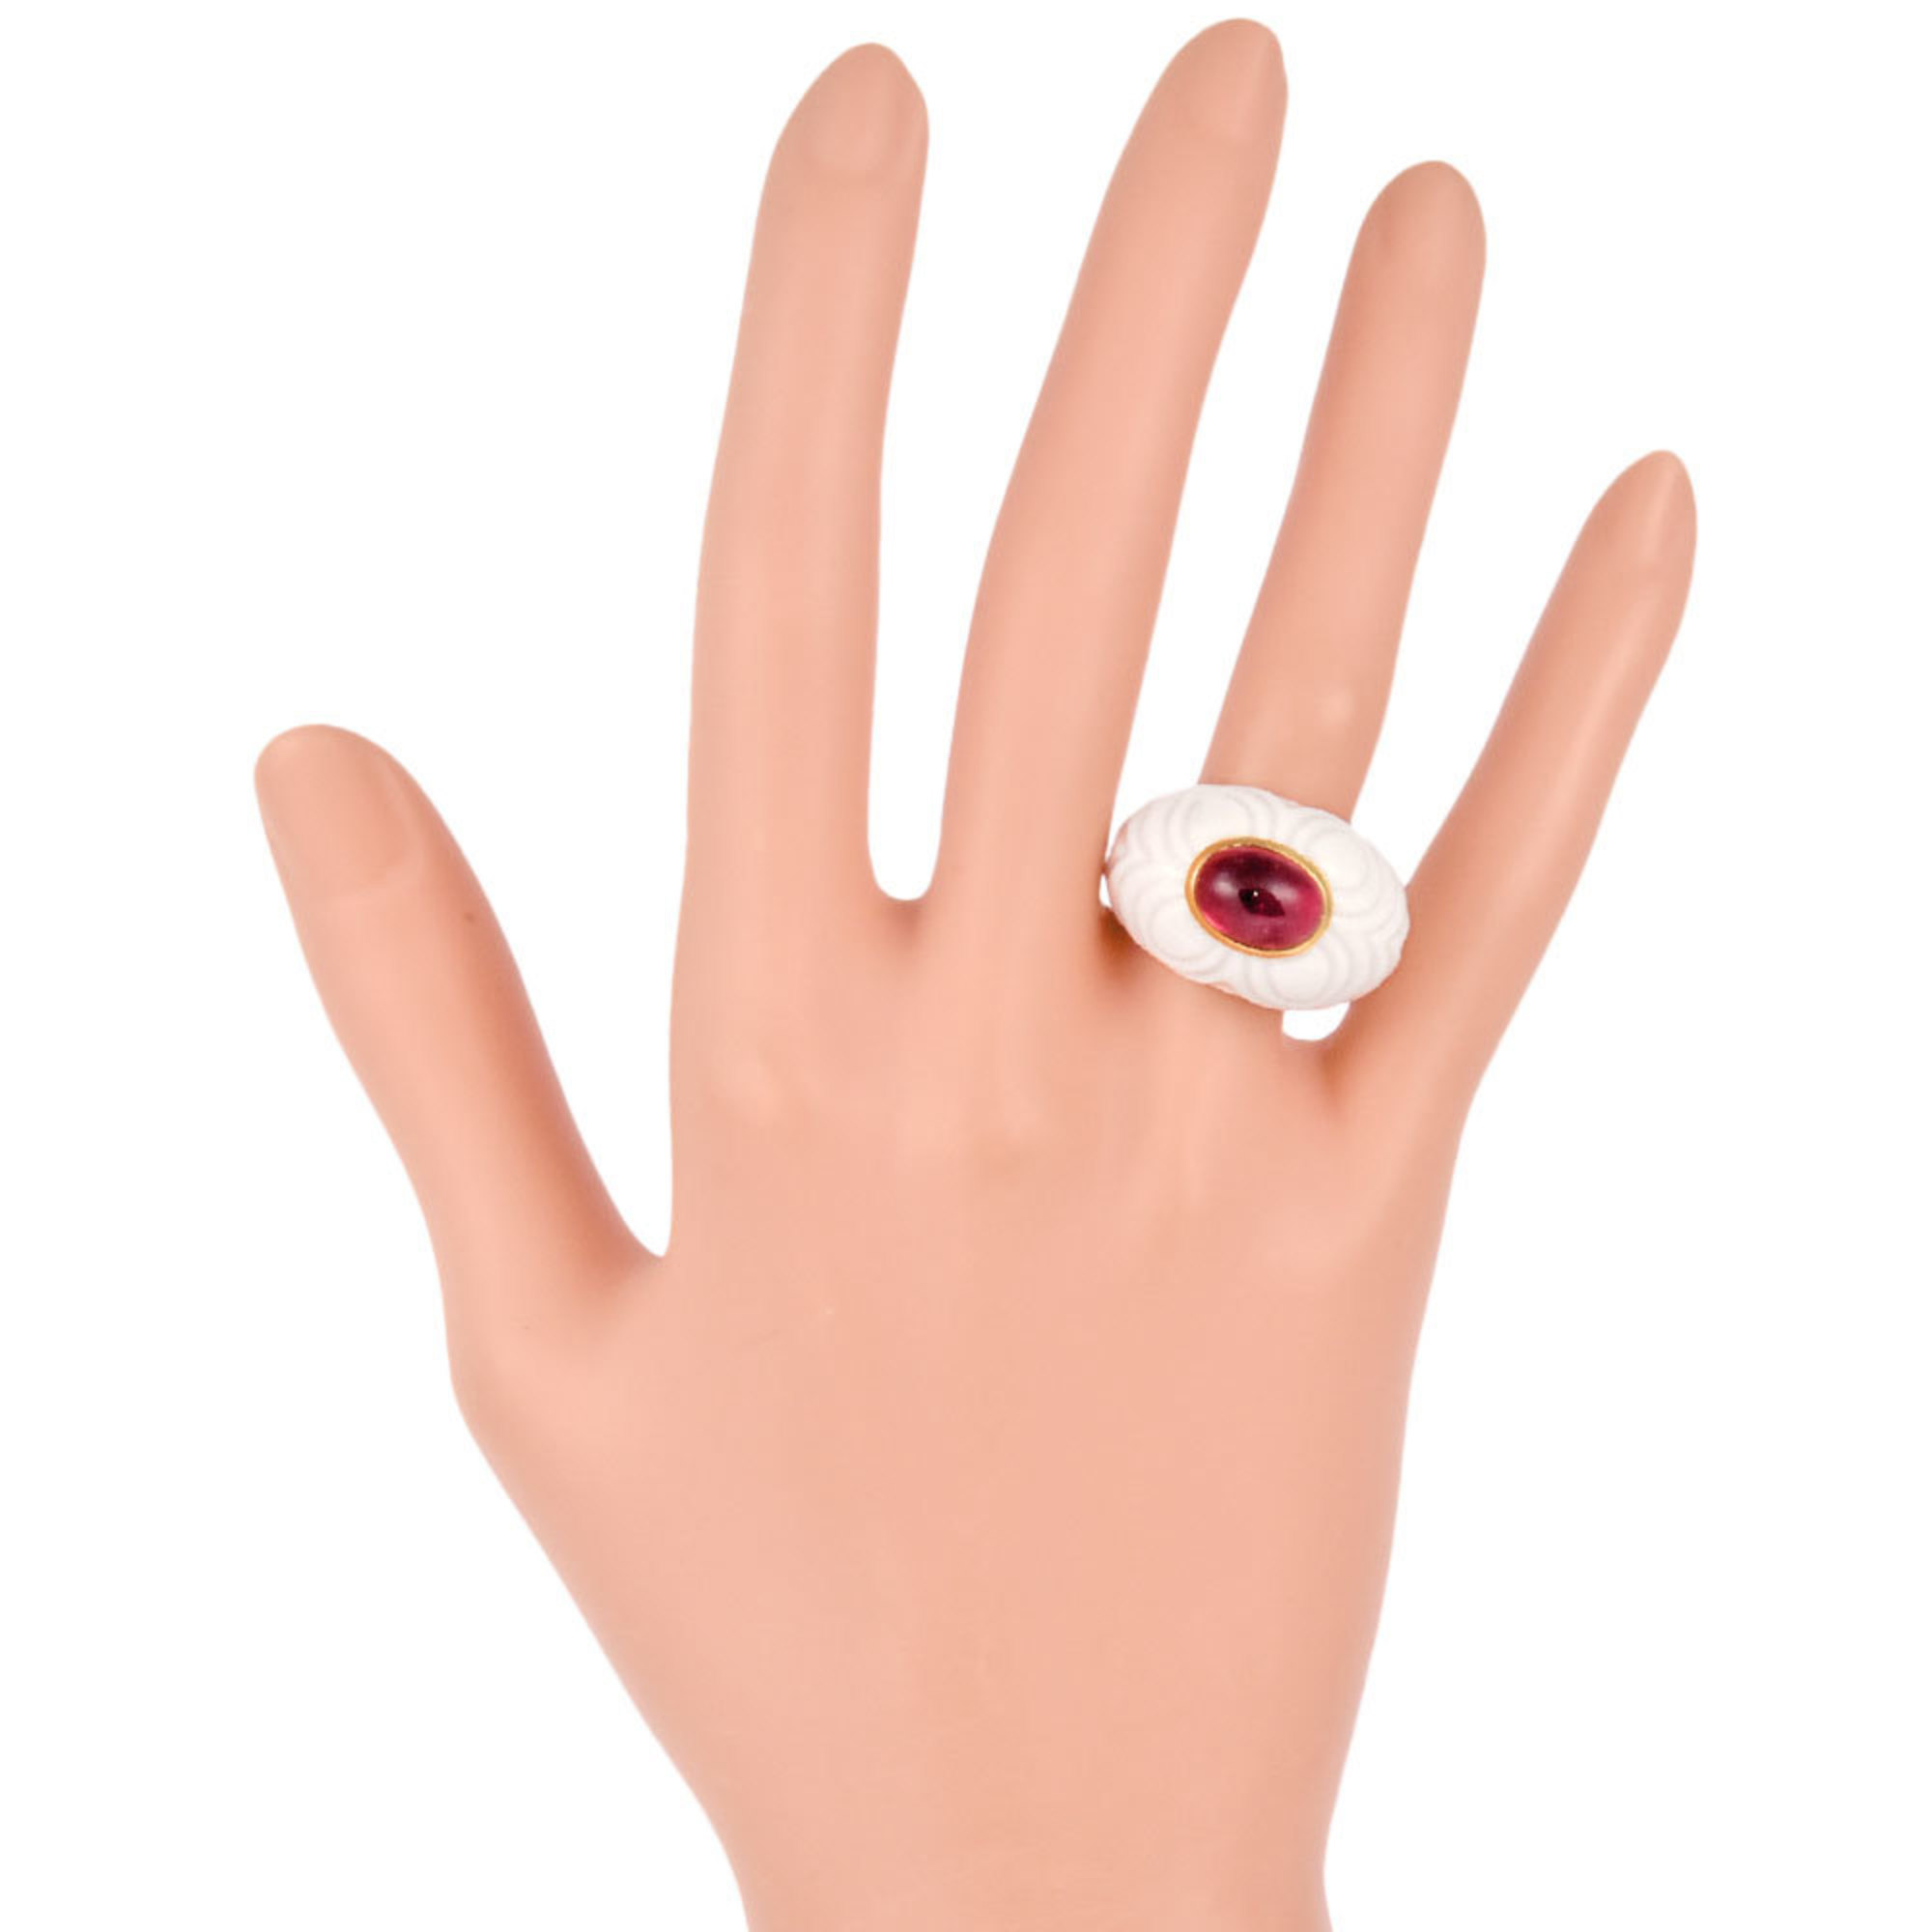 Bvlgari BVLGARI Chandra Pink Tourmaline Ring K18YG White Ceramic #13